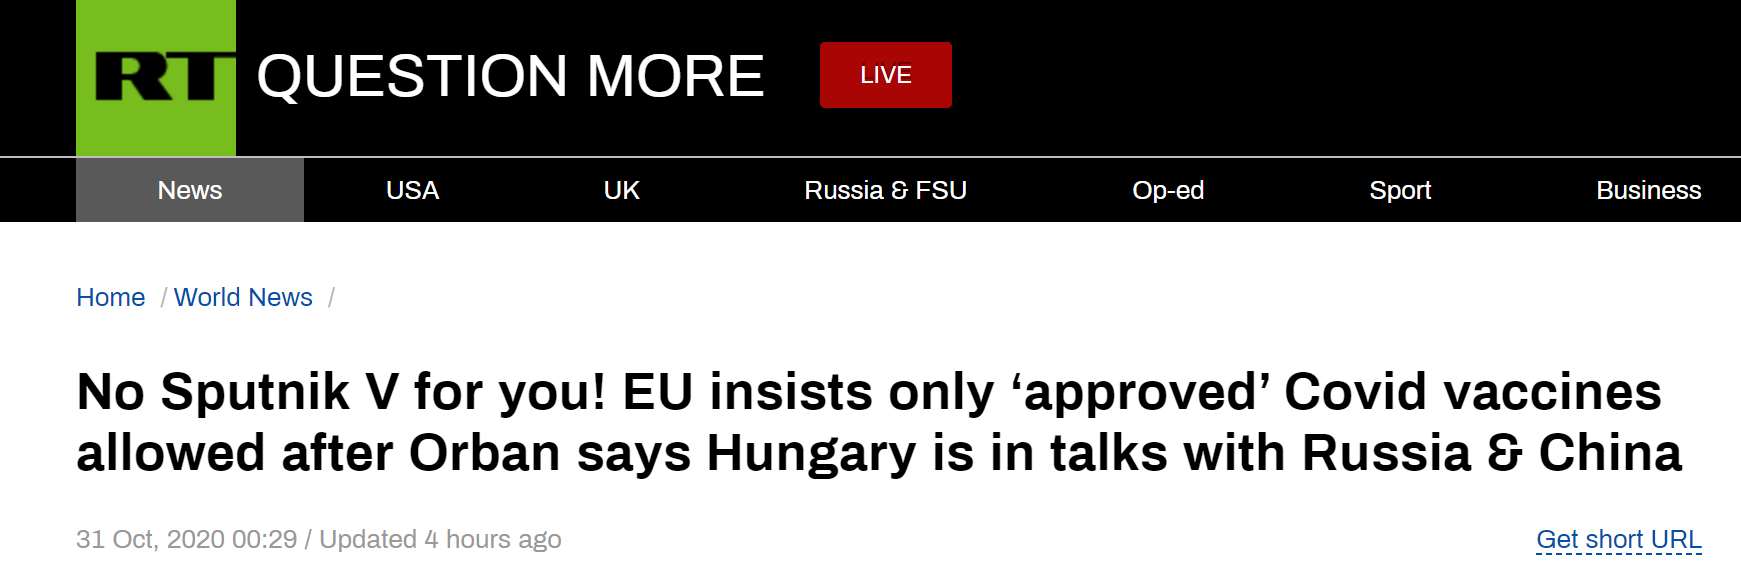 RT：没有卫星V给你们！在欧尔班说匈牙利正与俄中商量（疫苗事宜）后，欧盟坚称只允许使用‘获批的’新冠疫苗